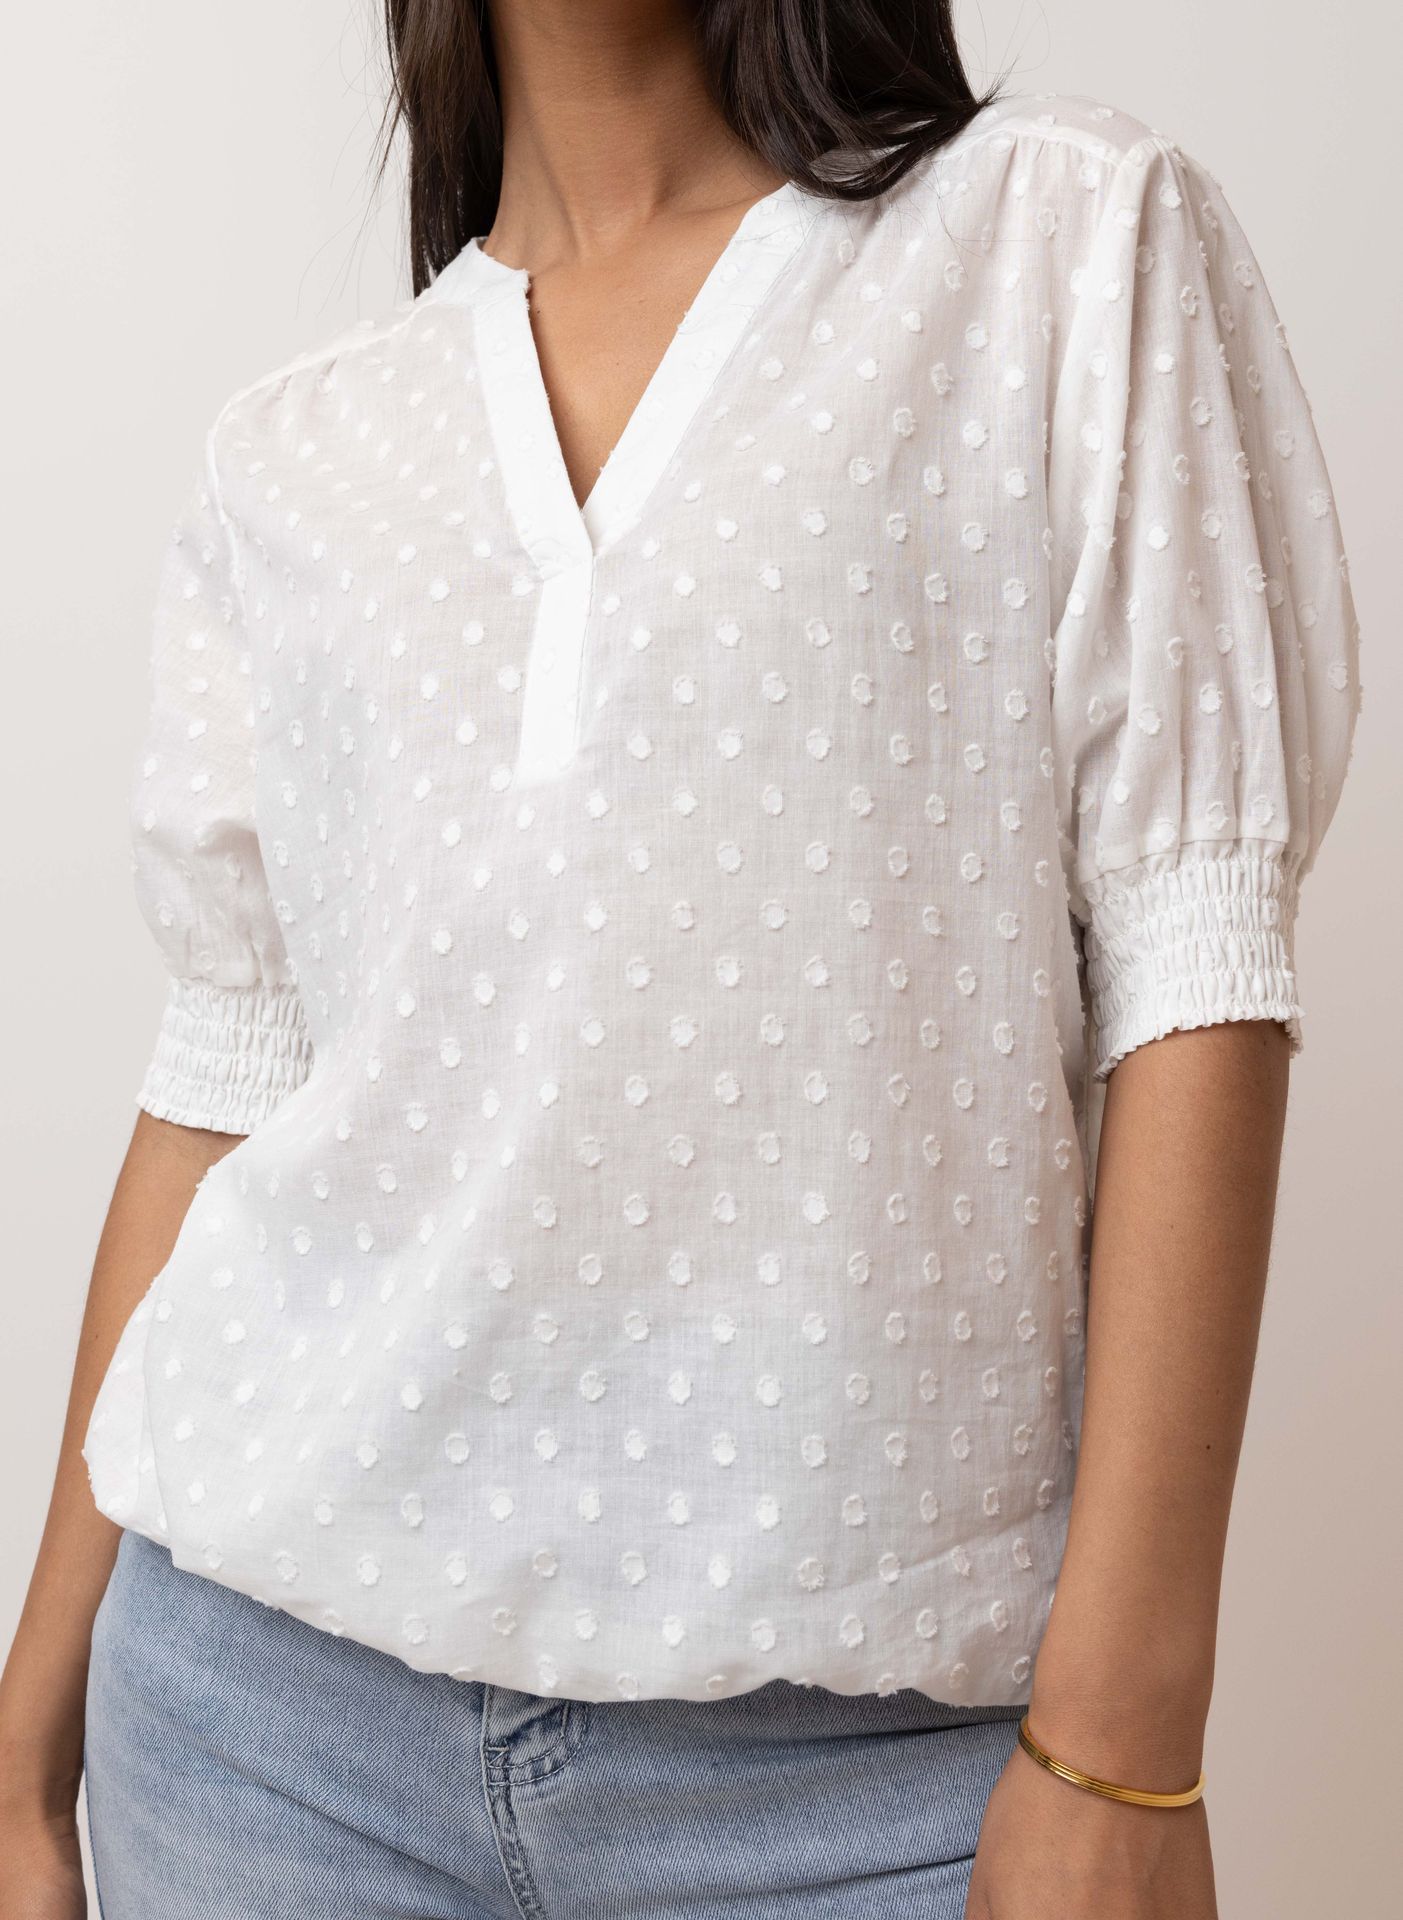 Norah Witte blouse white 213734-100